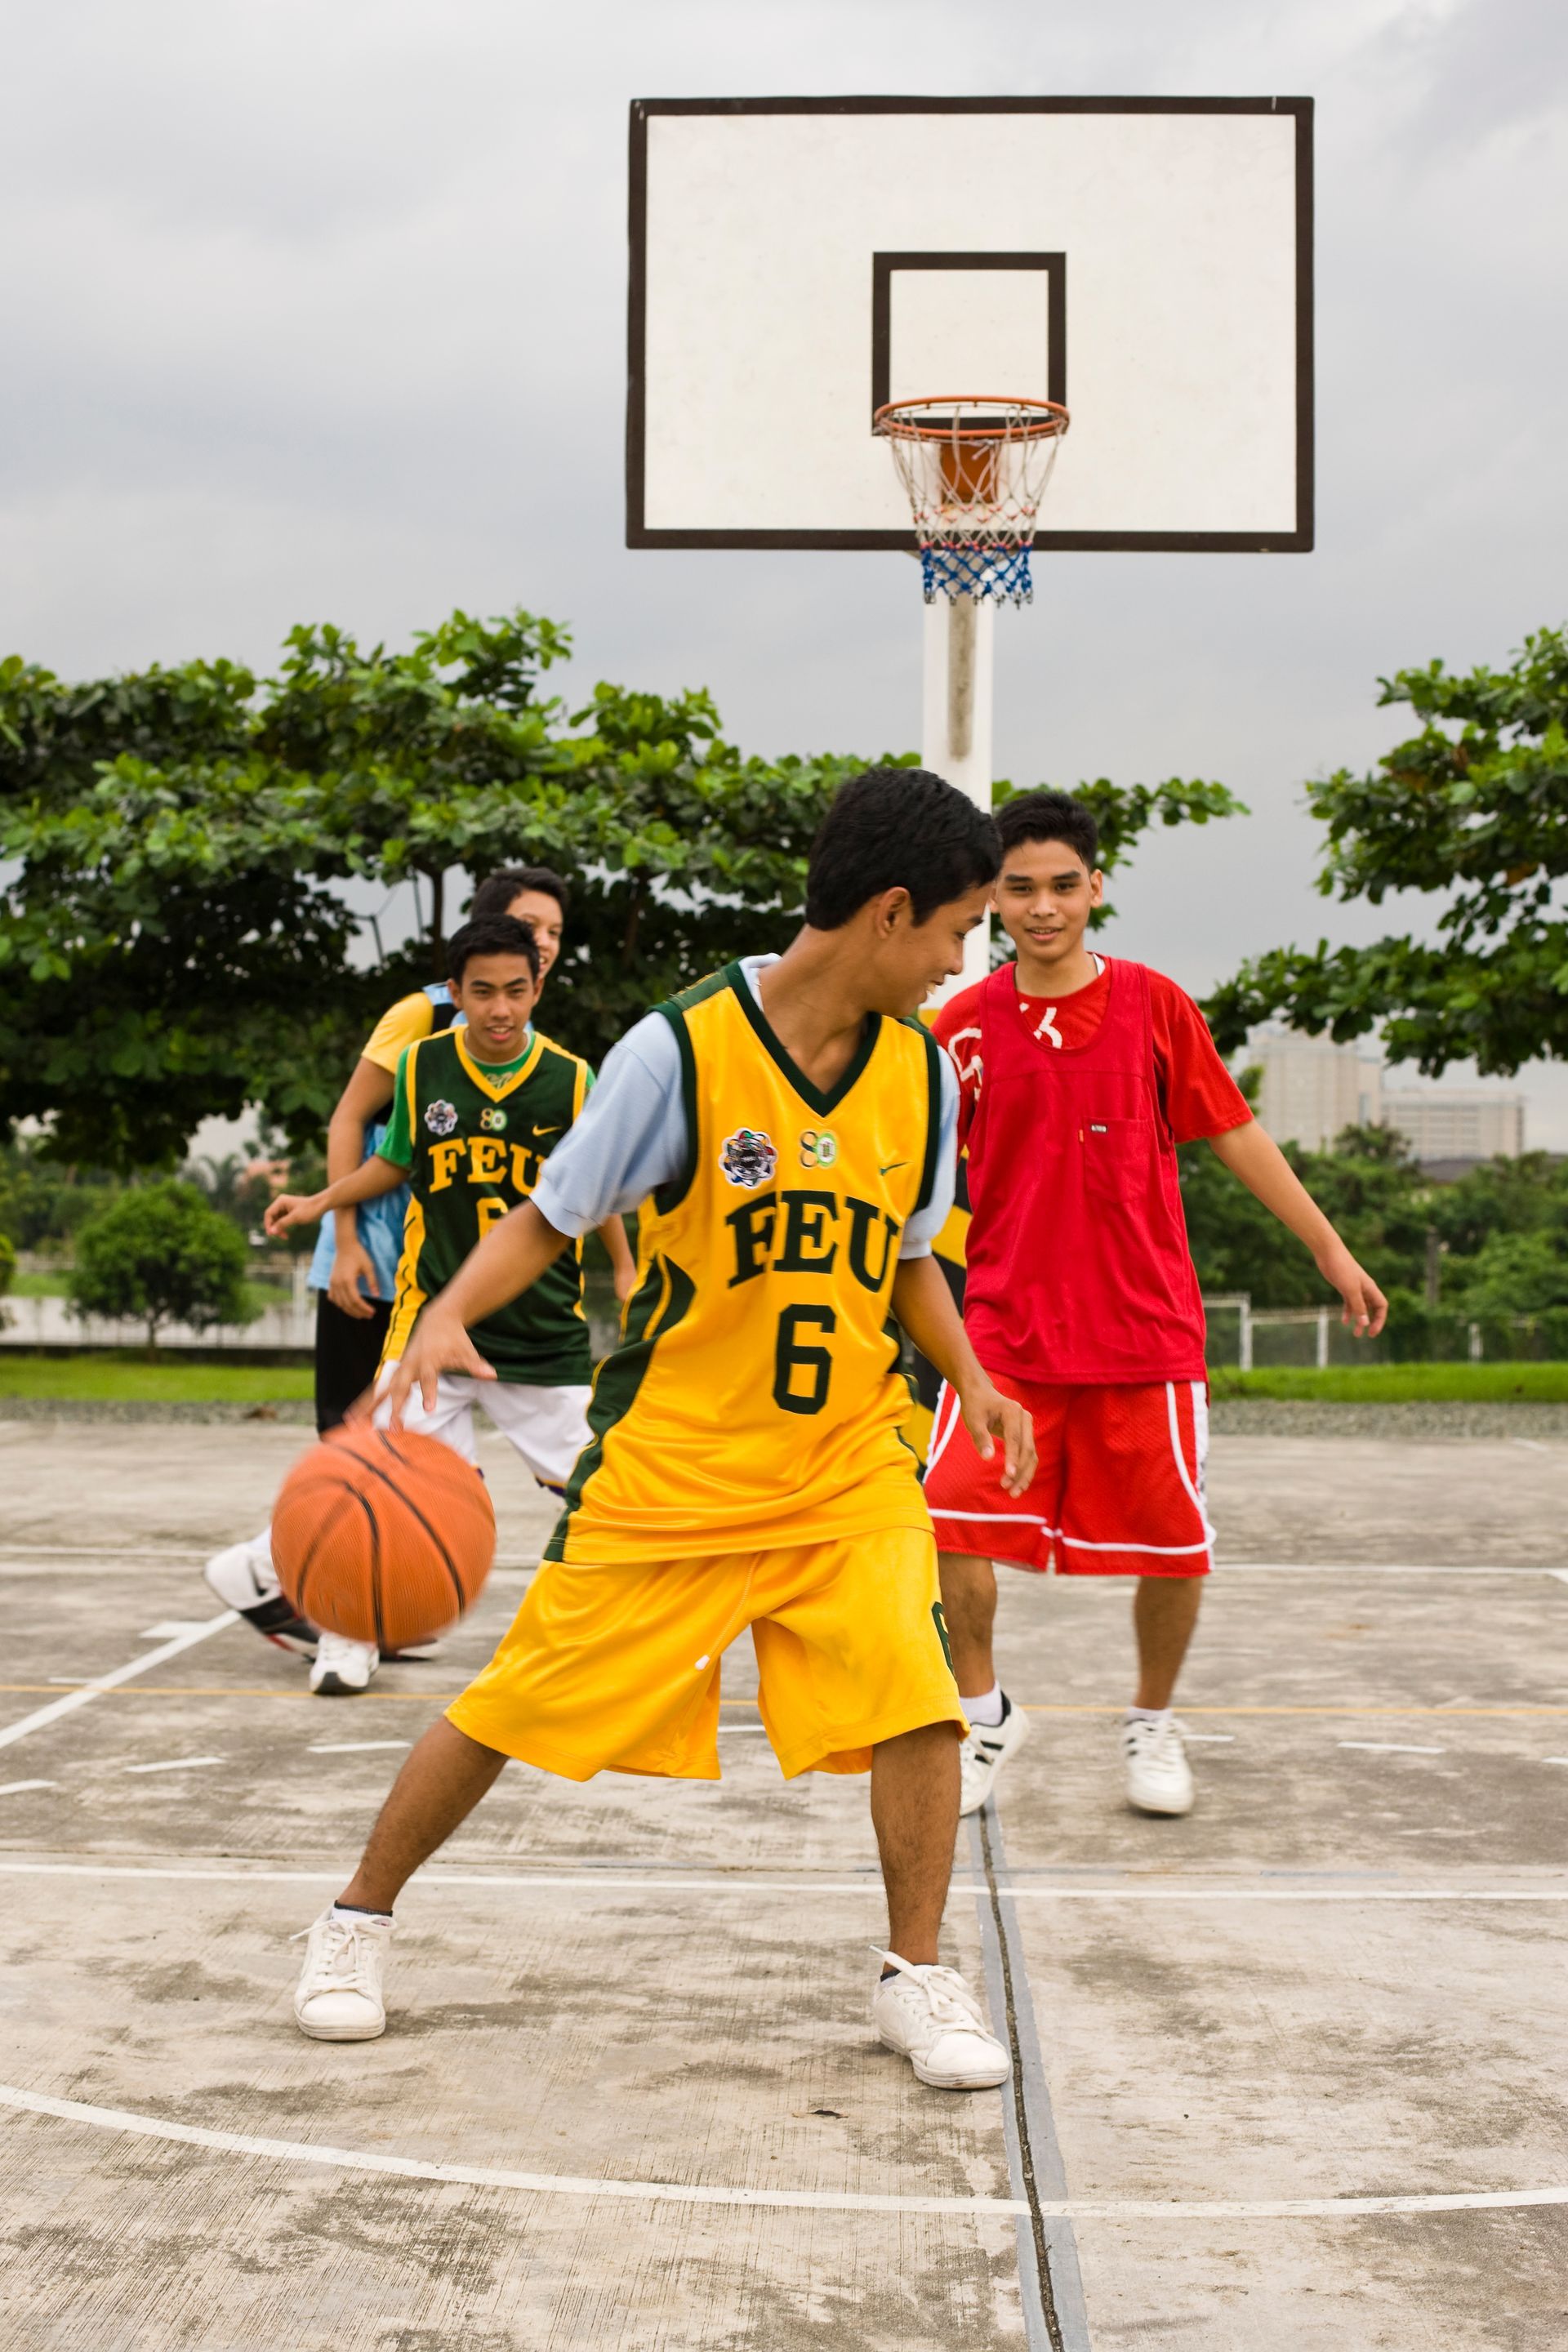 Young boys play basketball together.